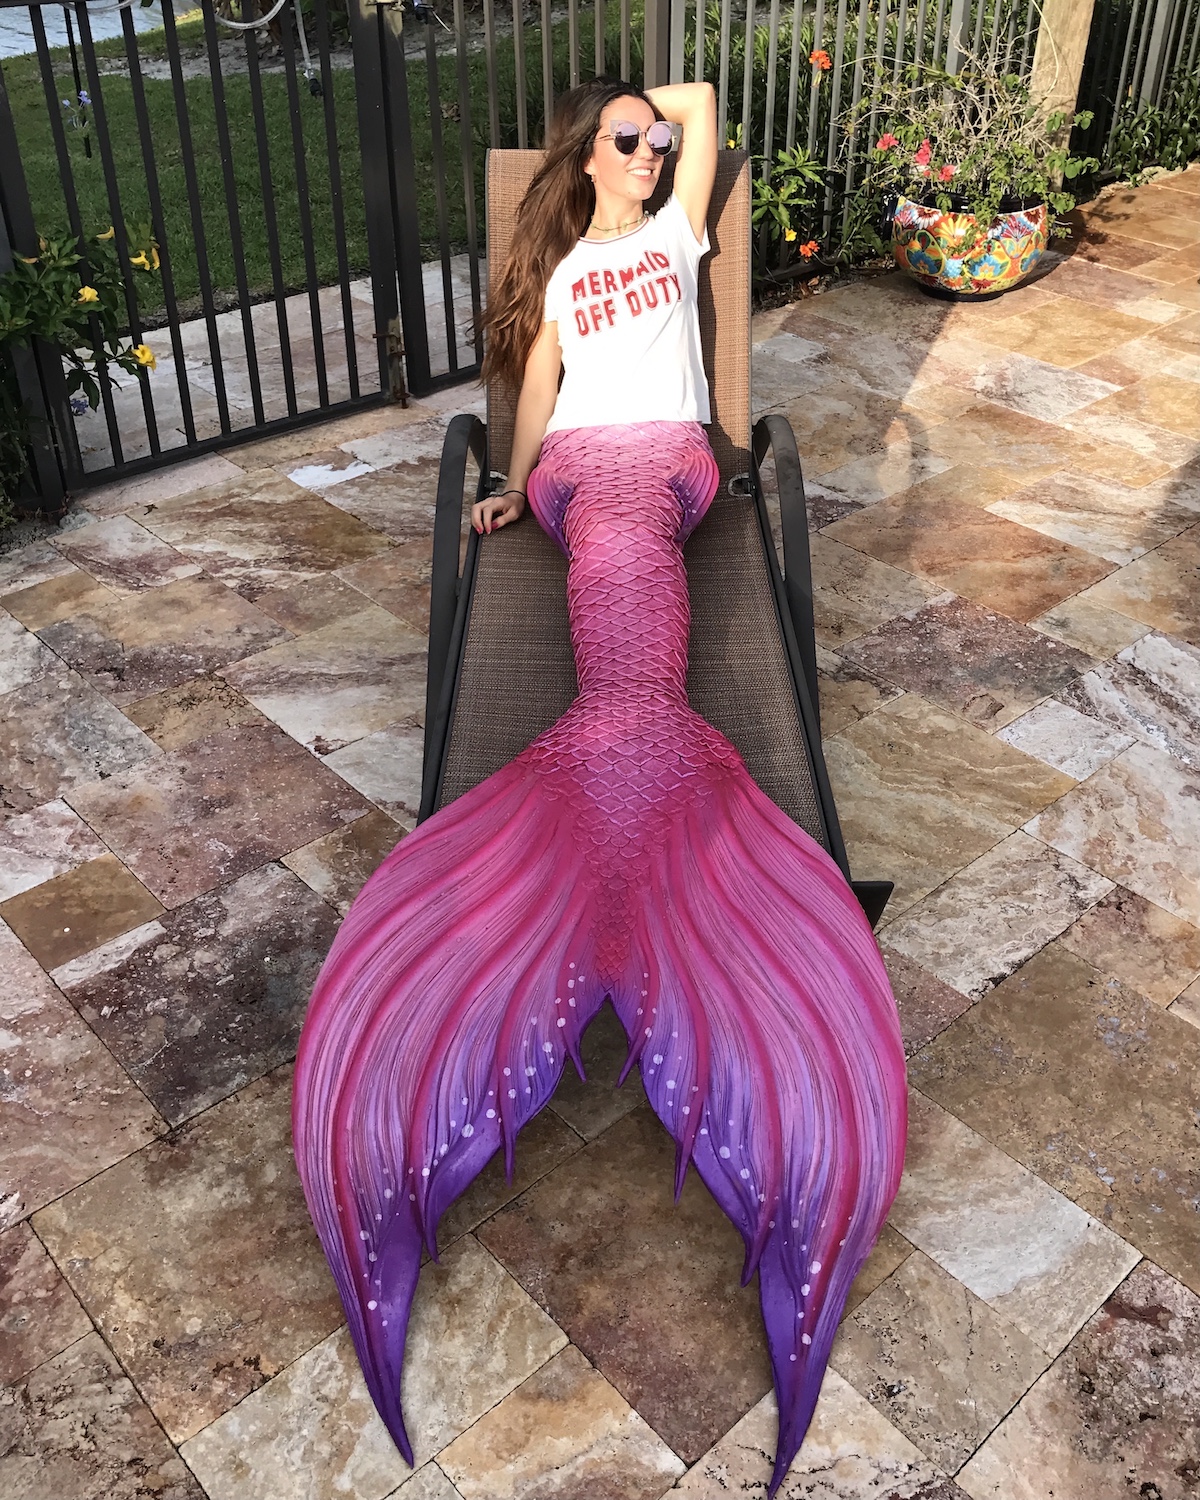 sitting mermaid off duty